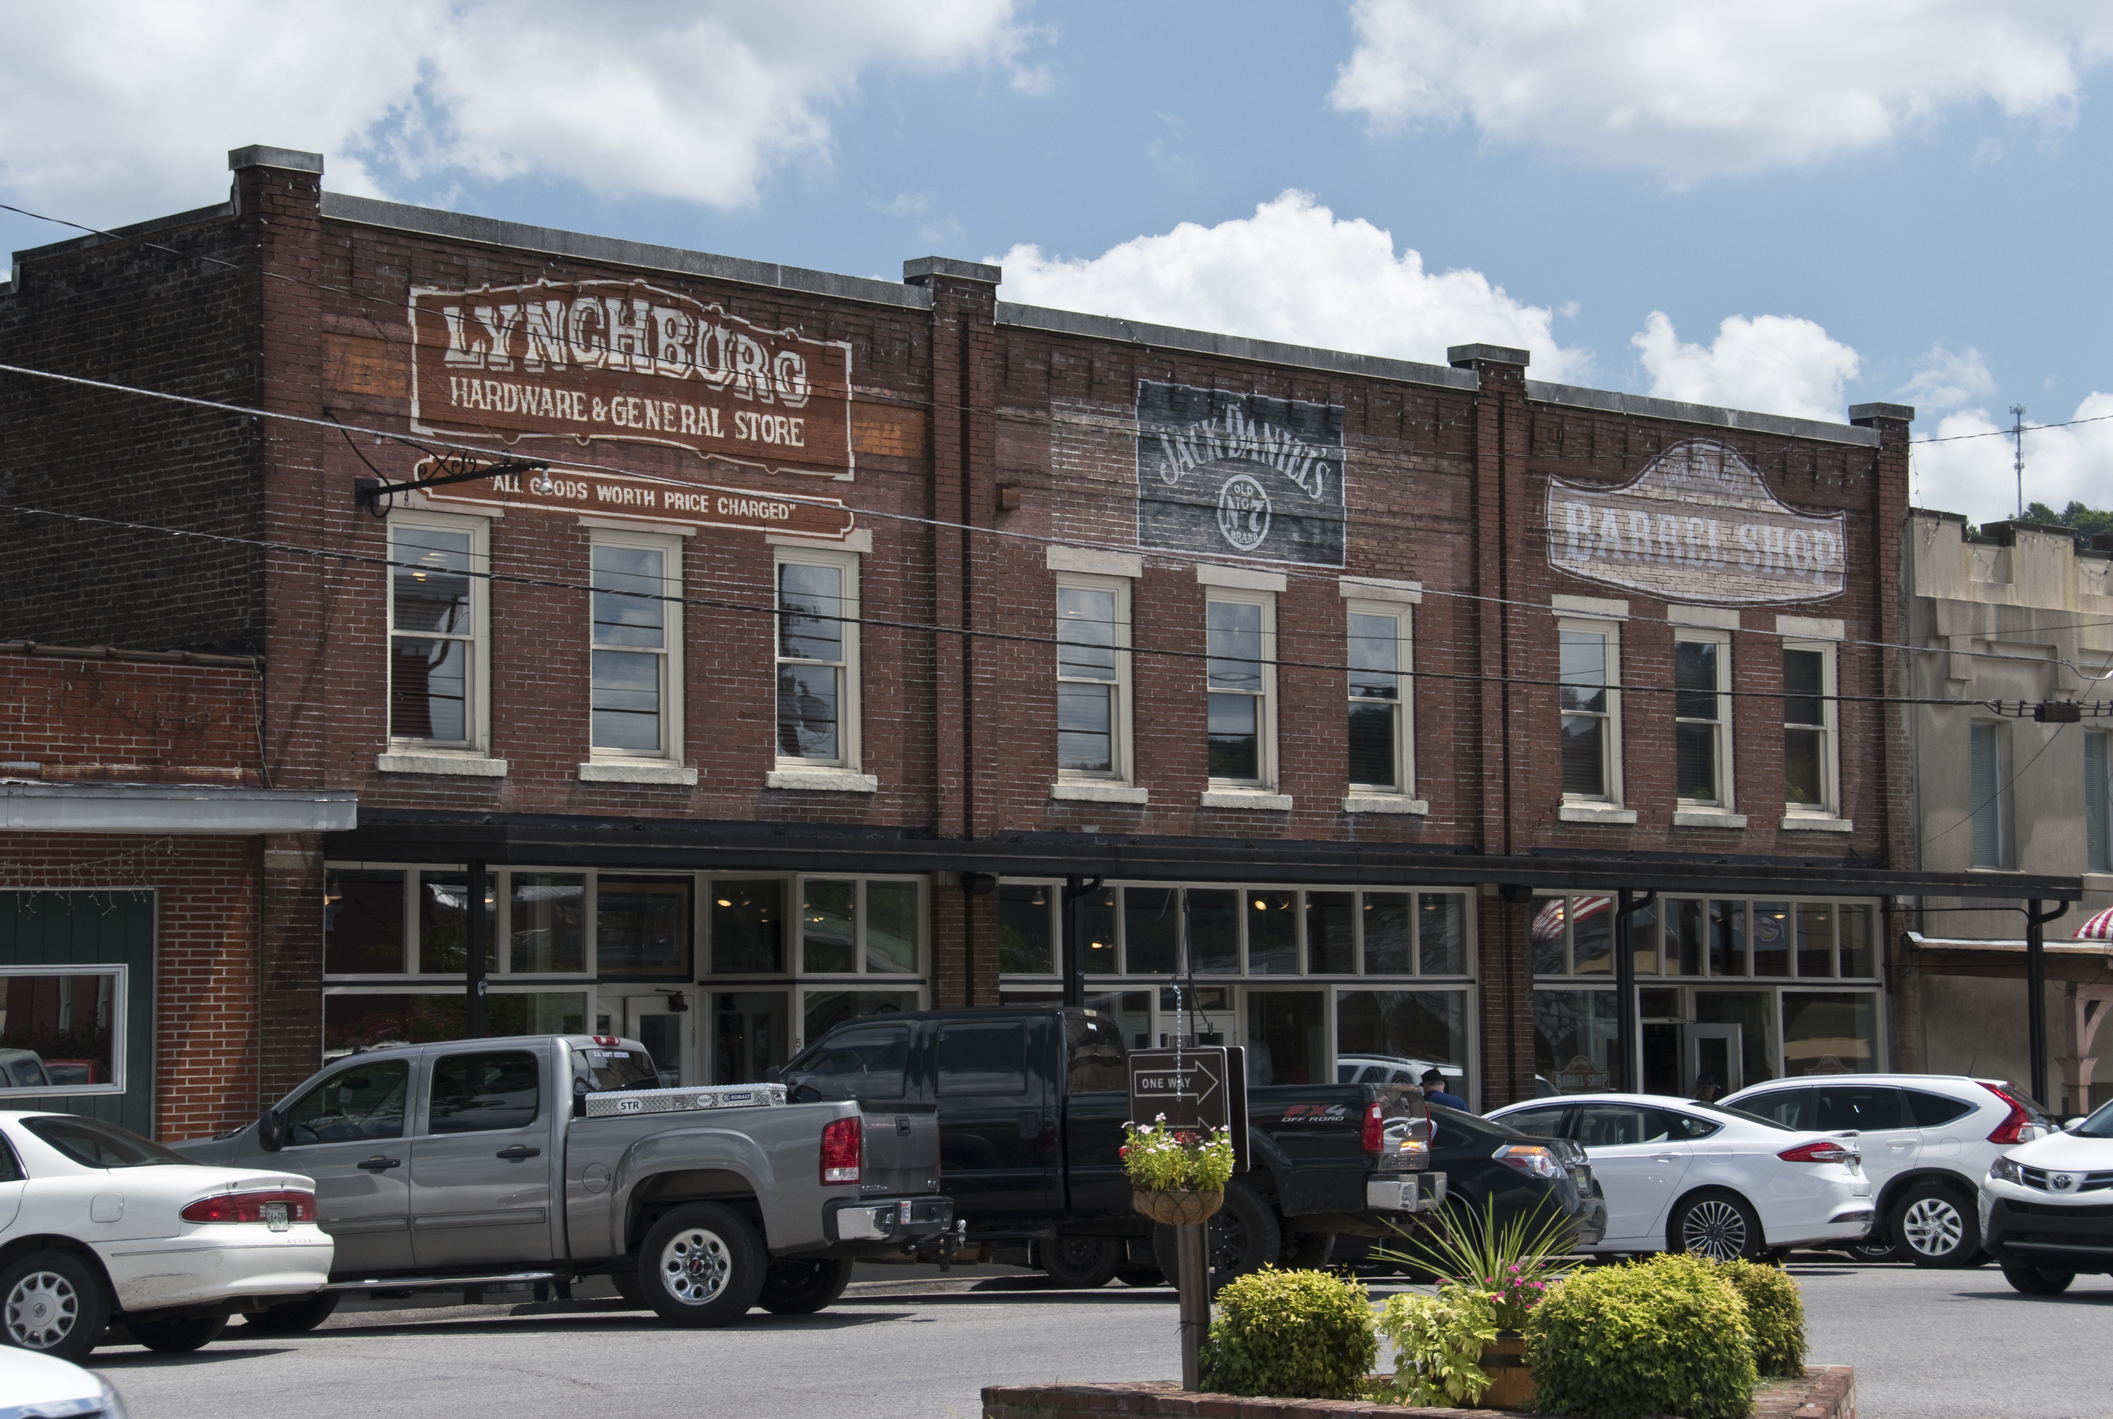 Jack Daniel’s (Lynchburg, Tennessee) 